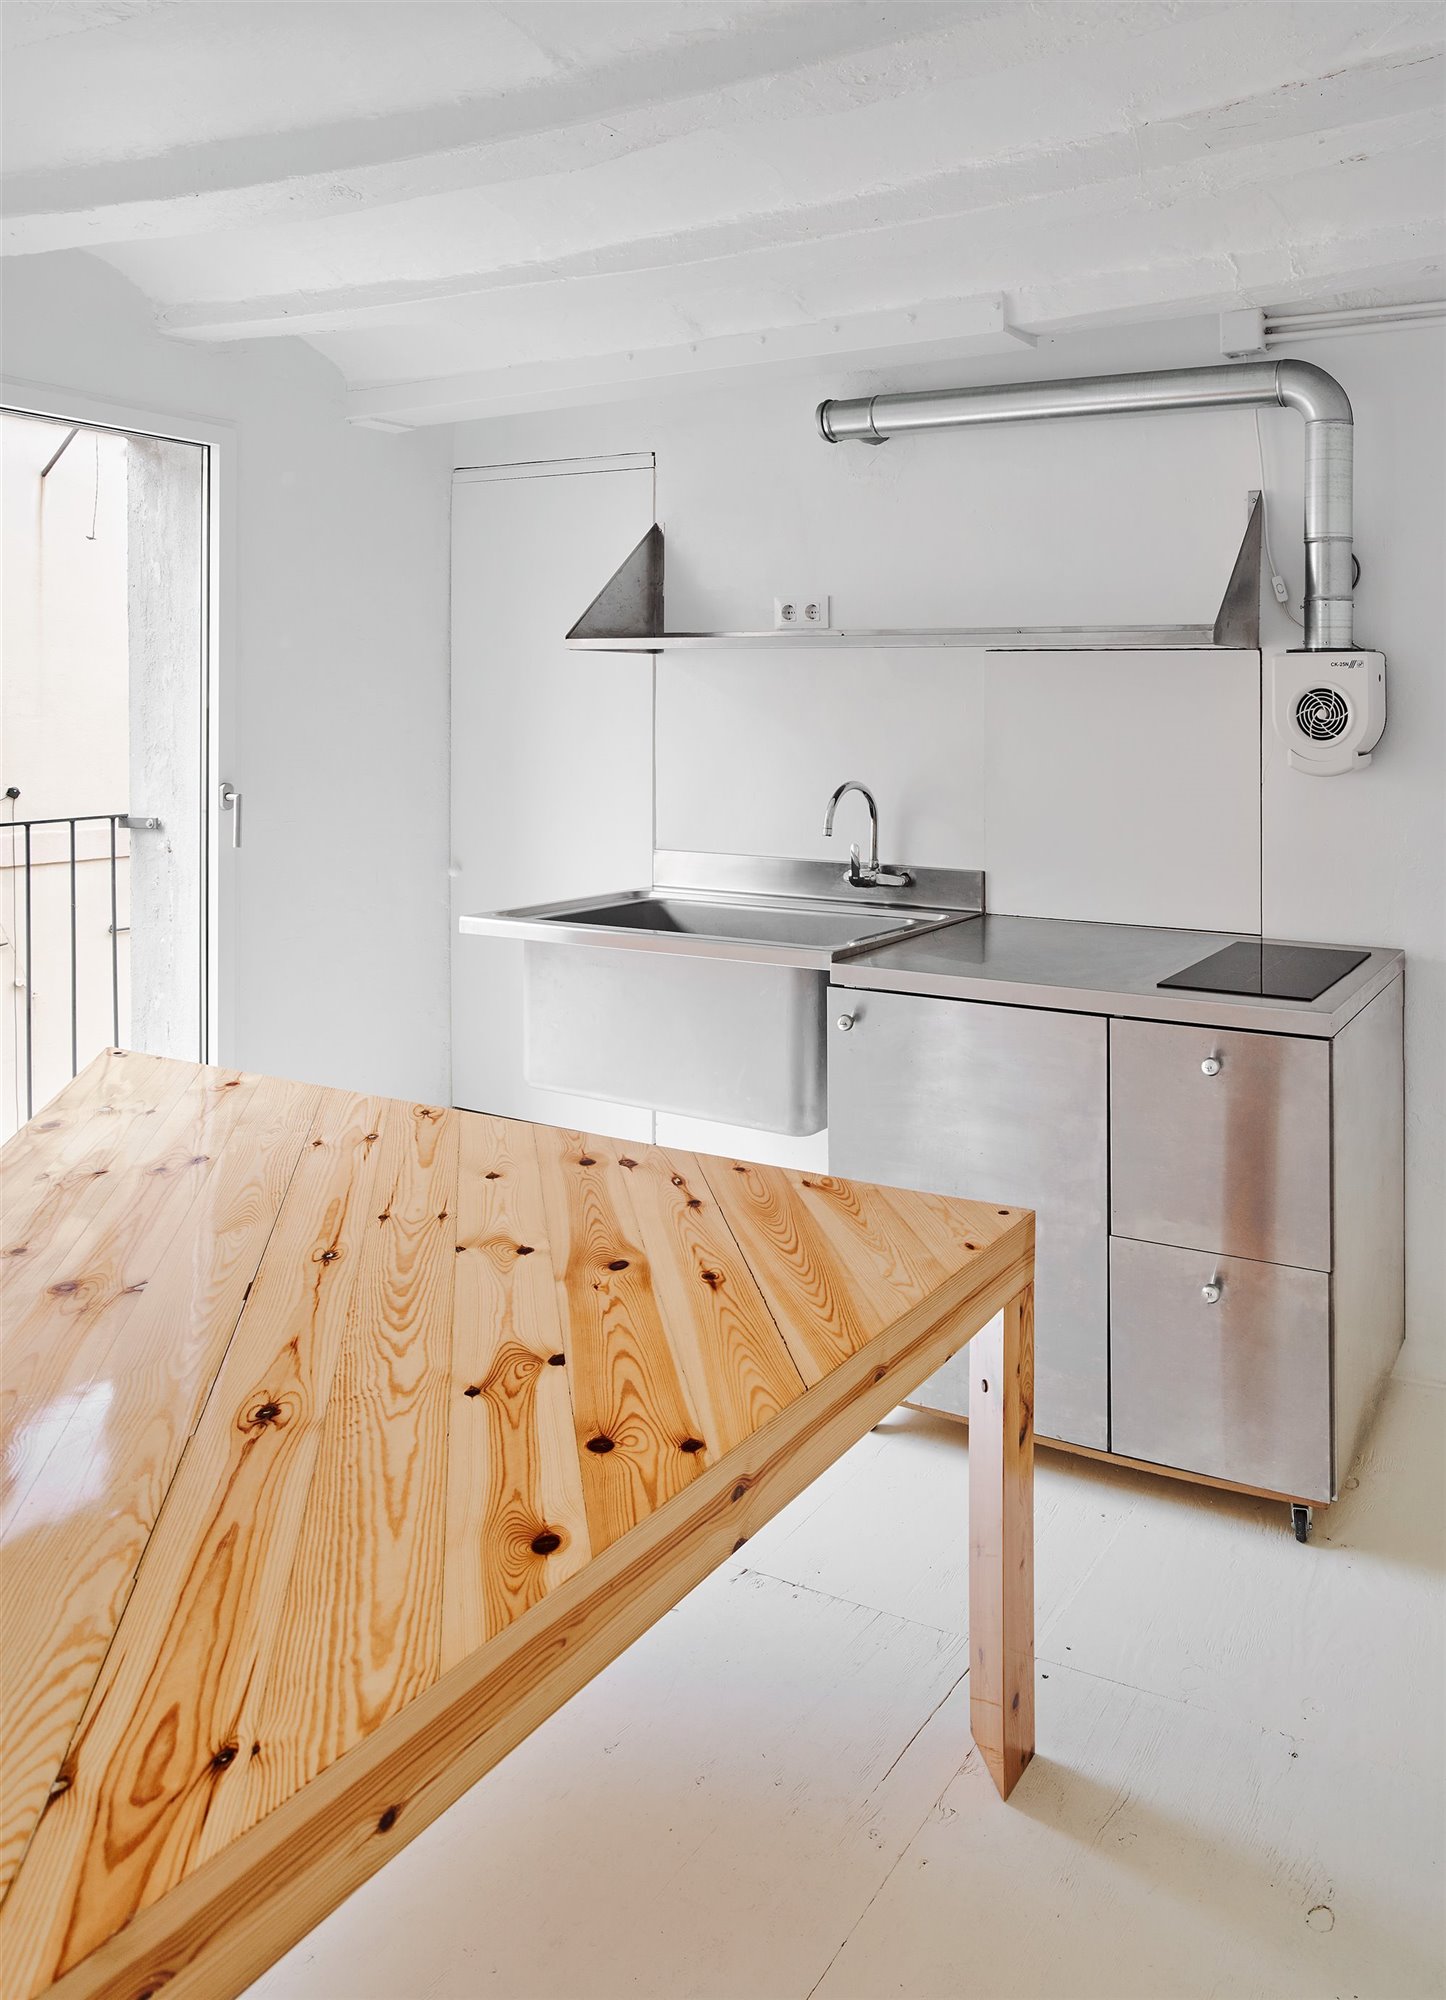 La cocina de la casa del arquitecto, a modo de kitchenette, se ha diseñado en acero inoxidable. Foto: José Hevia